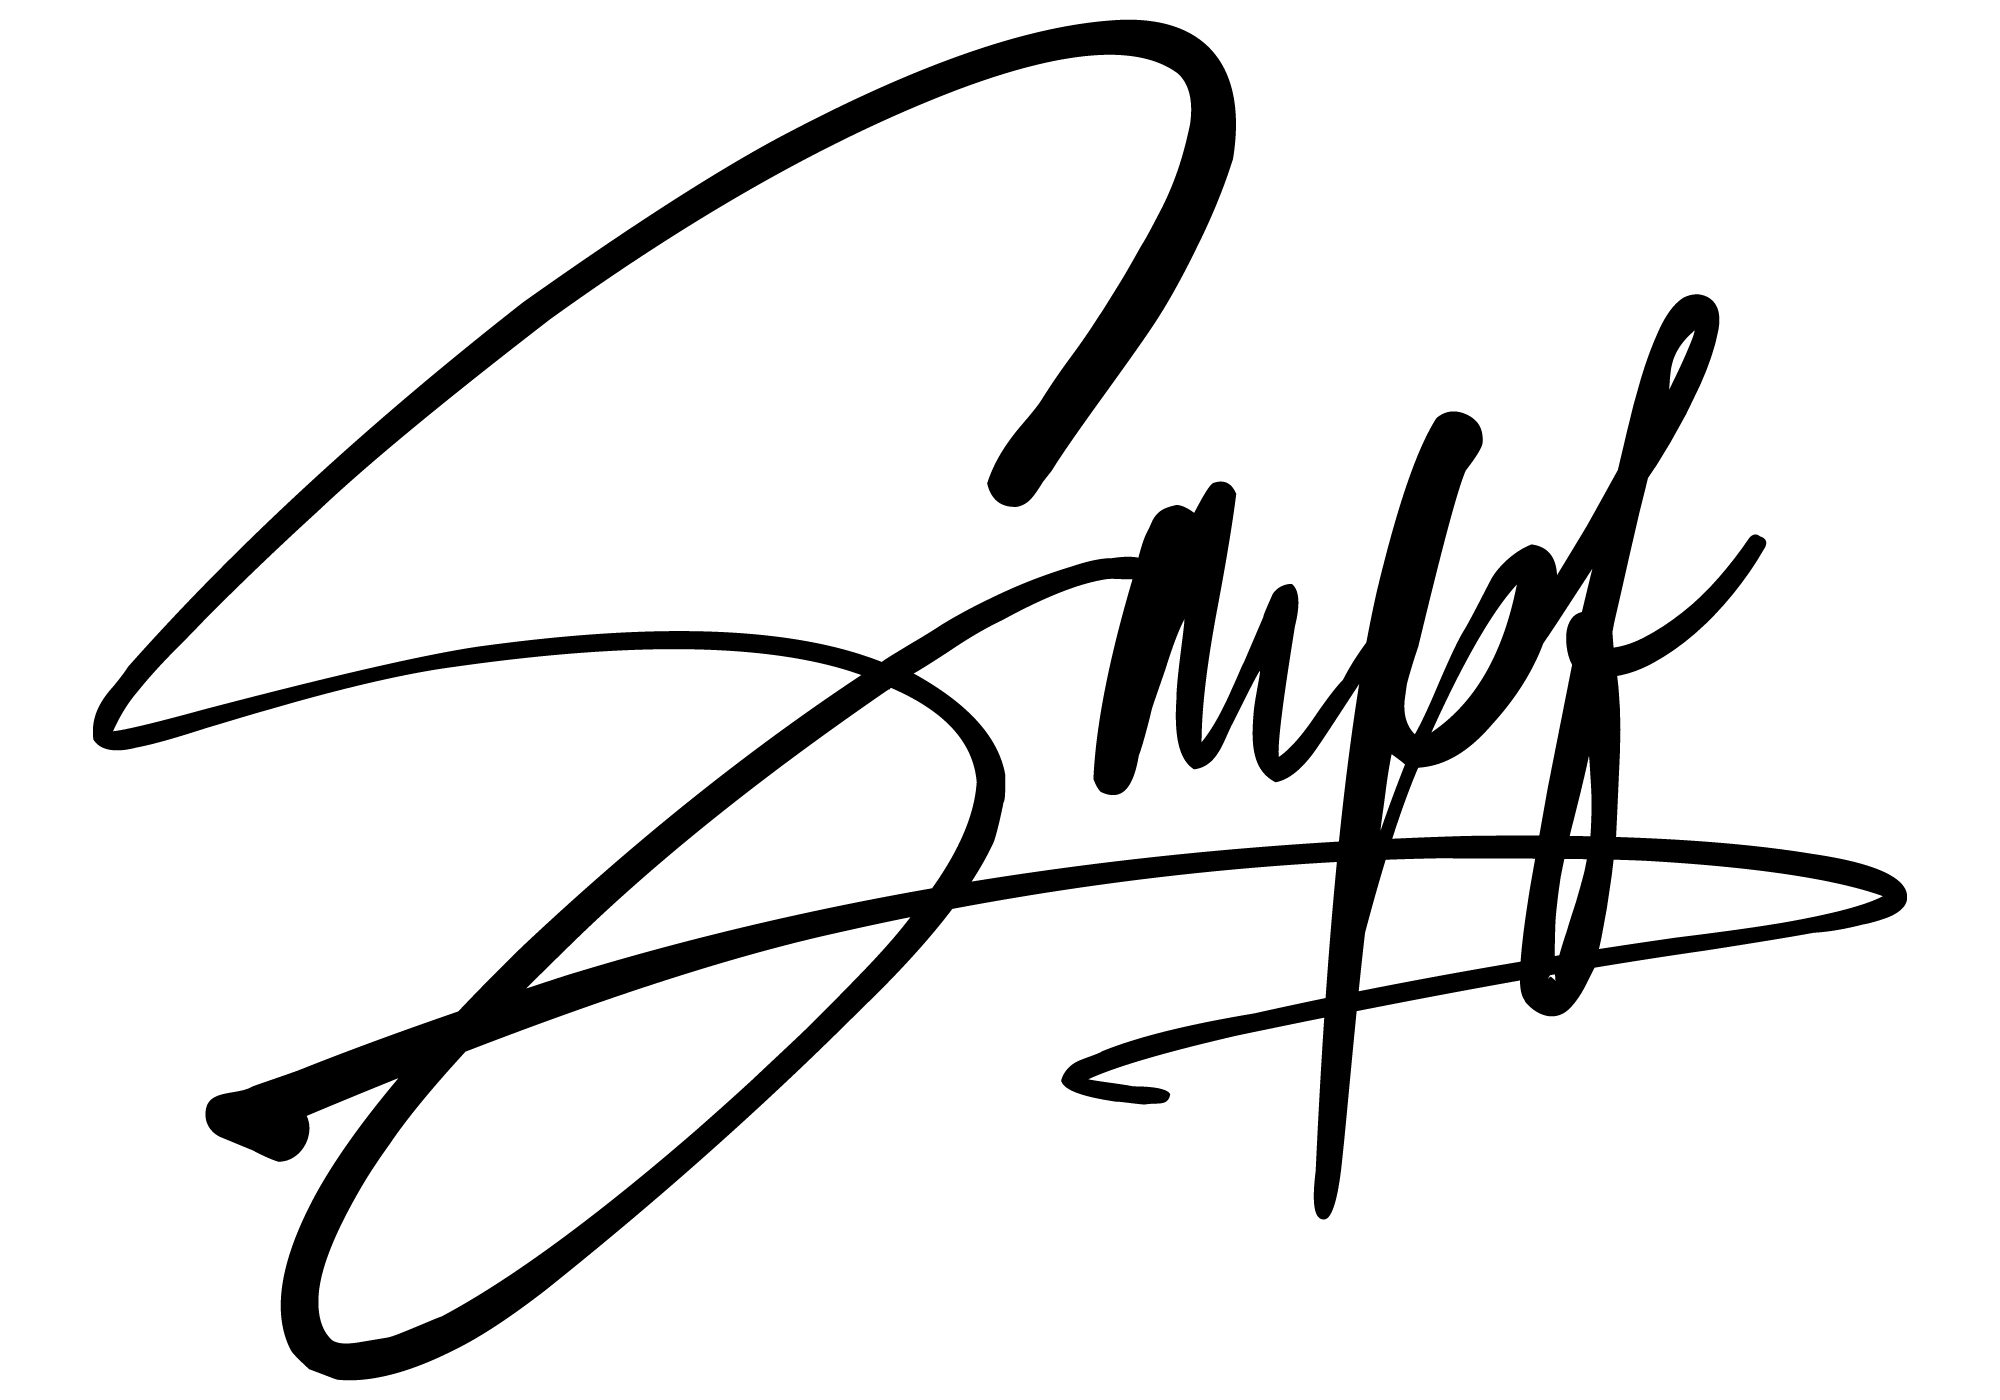 Smpf logo